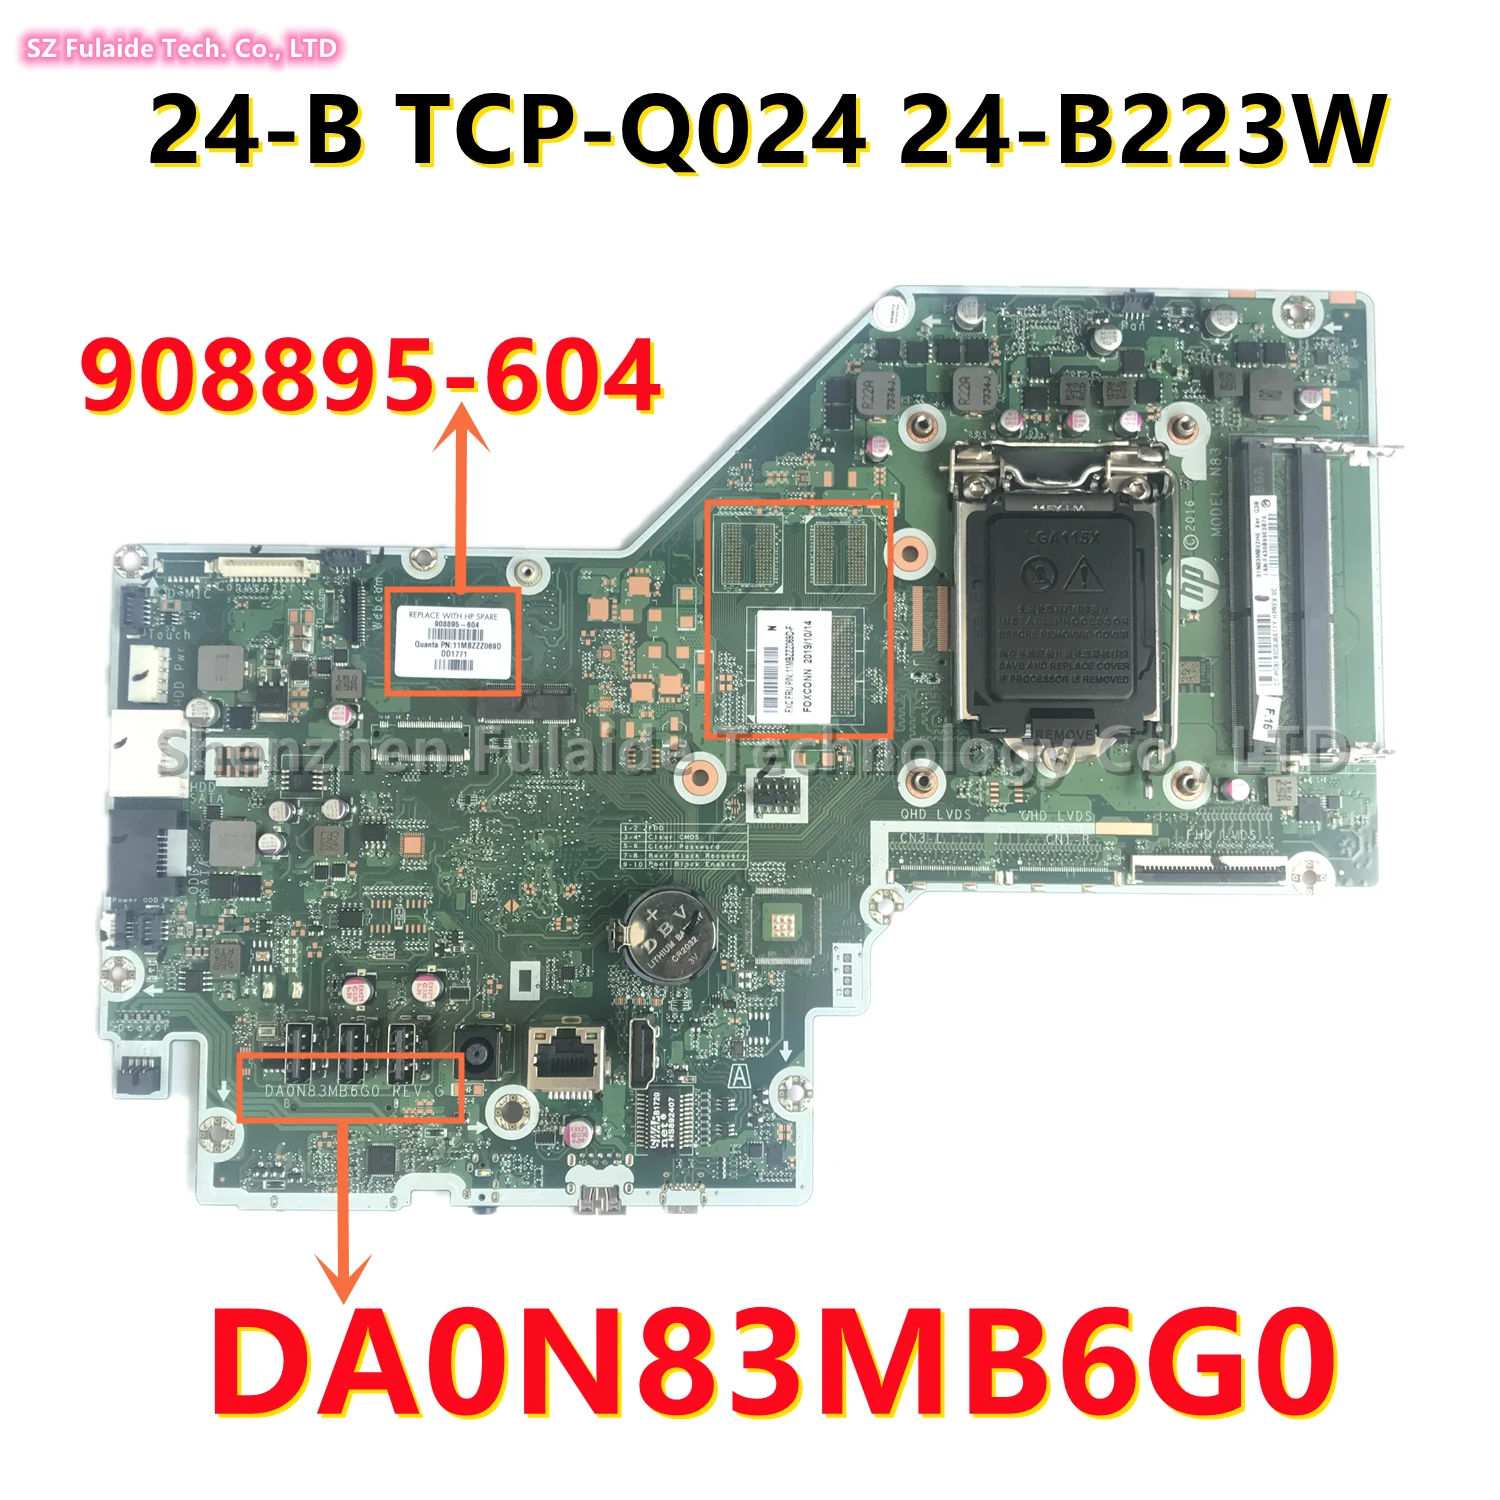 

DA0N83MB6G0 для HP Pavilion TCP-Q024 24-B 24-B223W, материнская плата все в одном, поддерживает только технические характеристики ЦП 908895-604